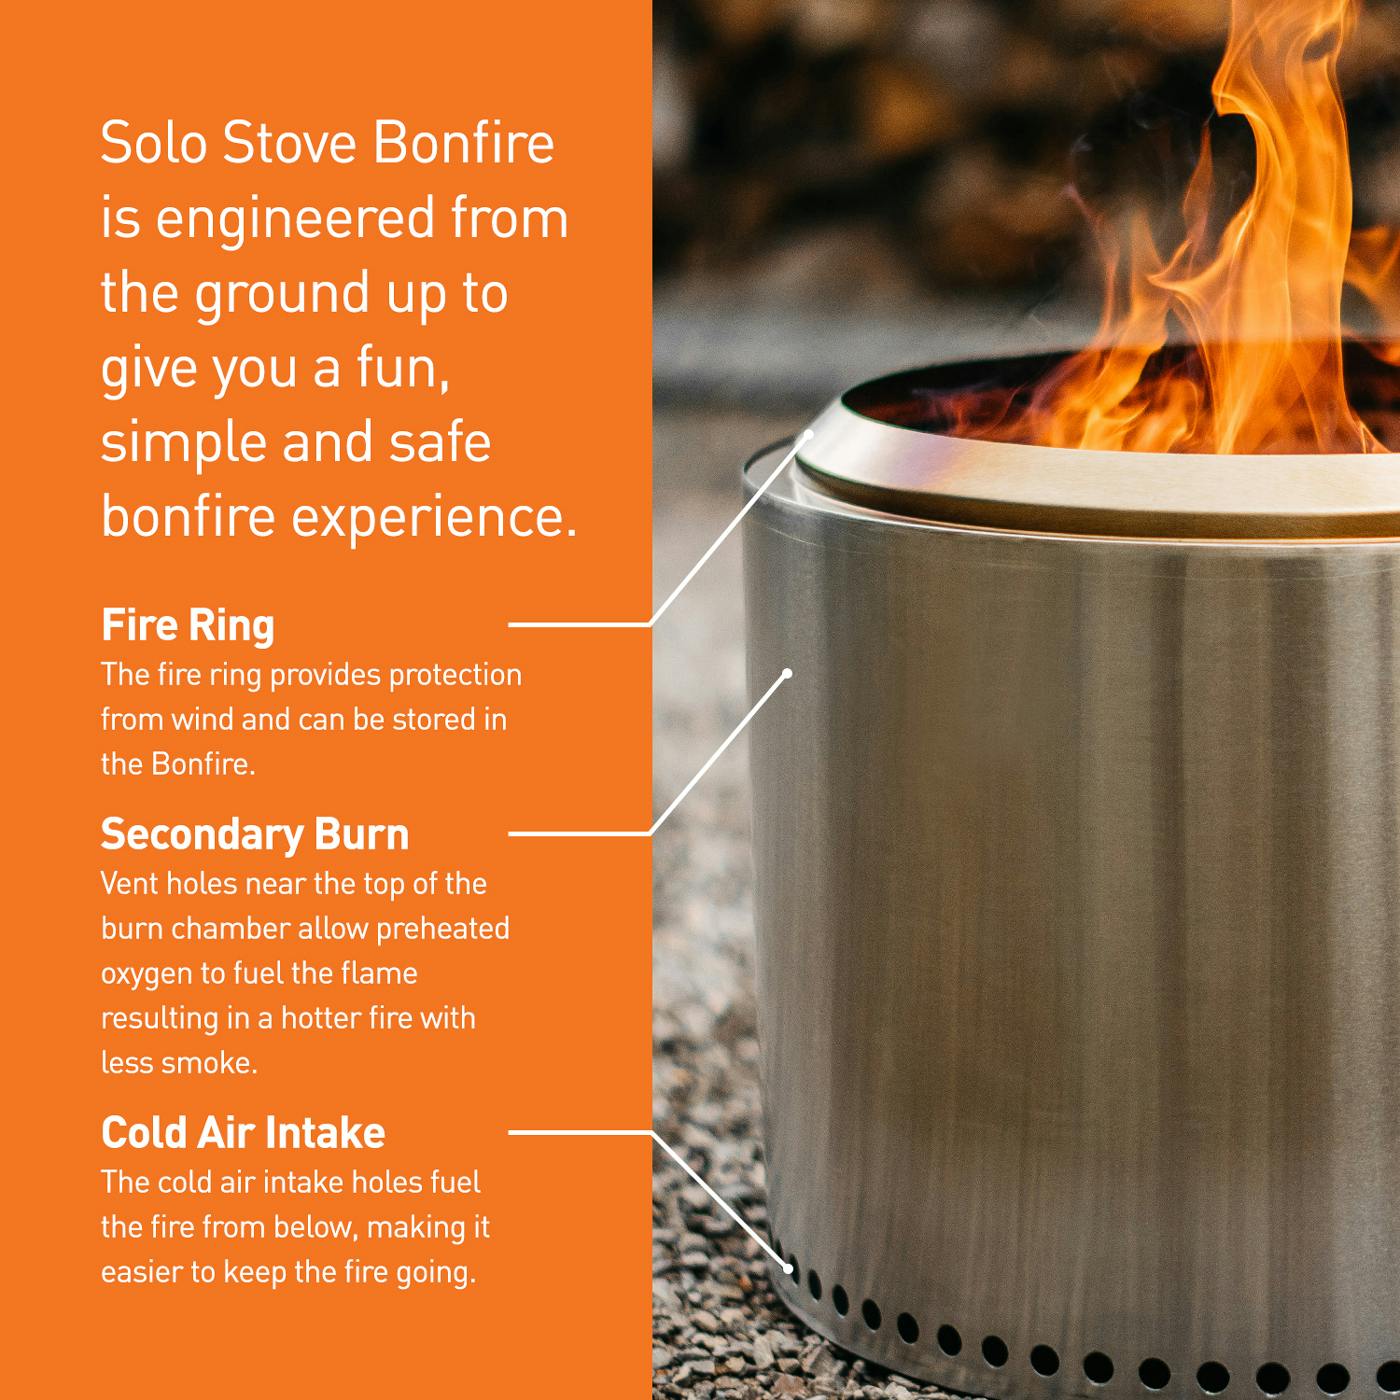 Solo Stove Bonfire - Portable Fire Pit